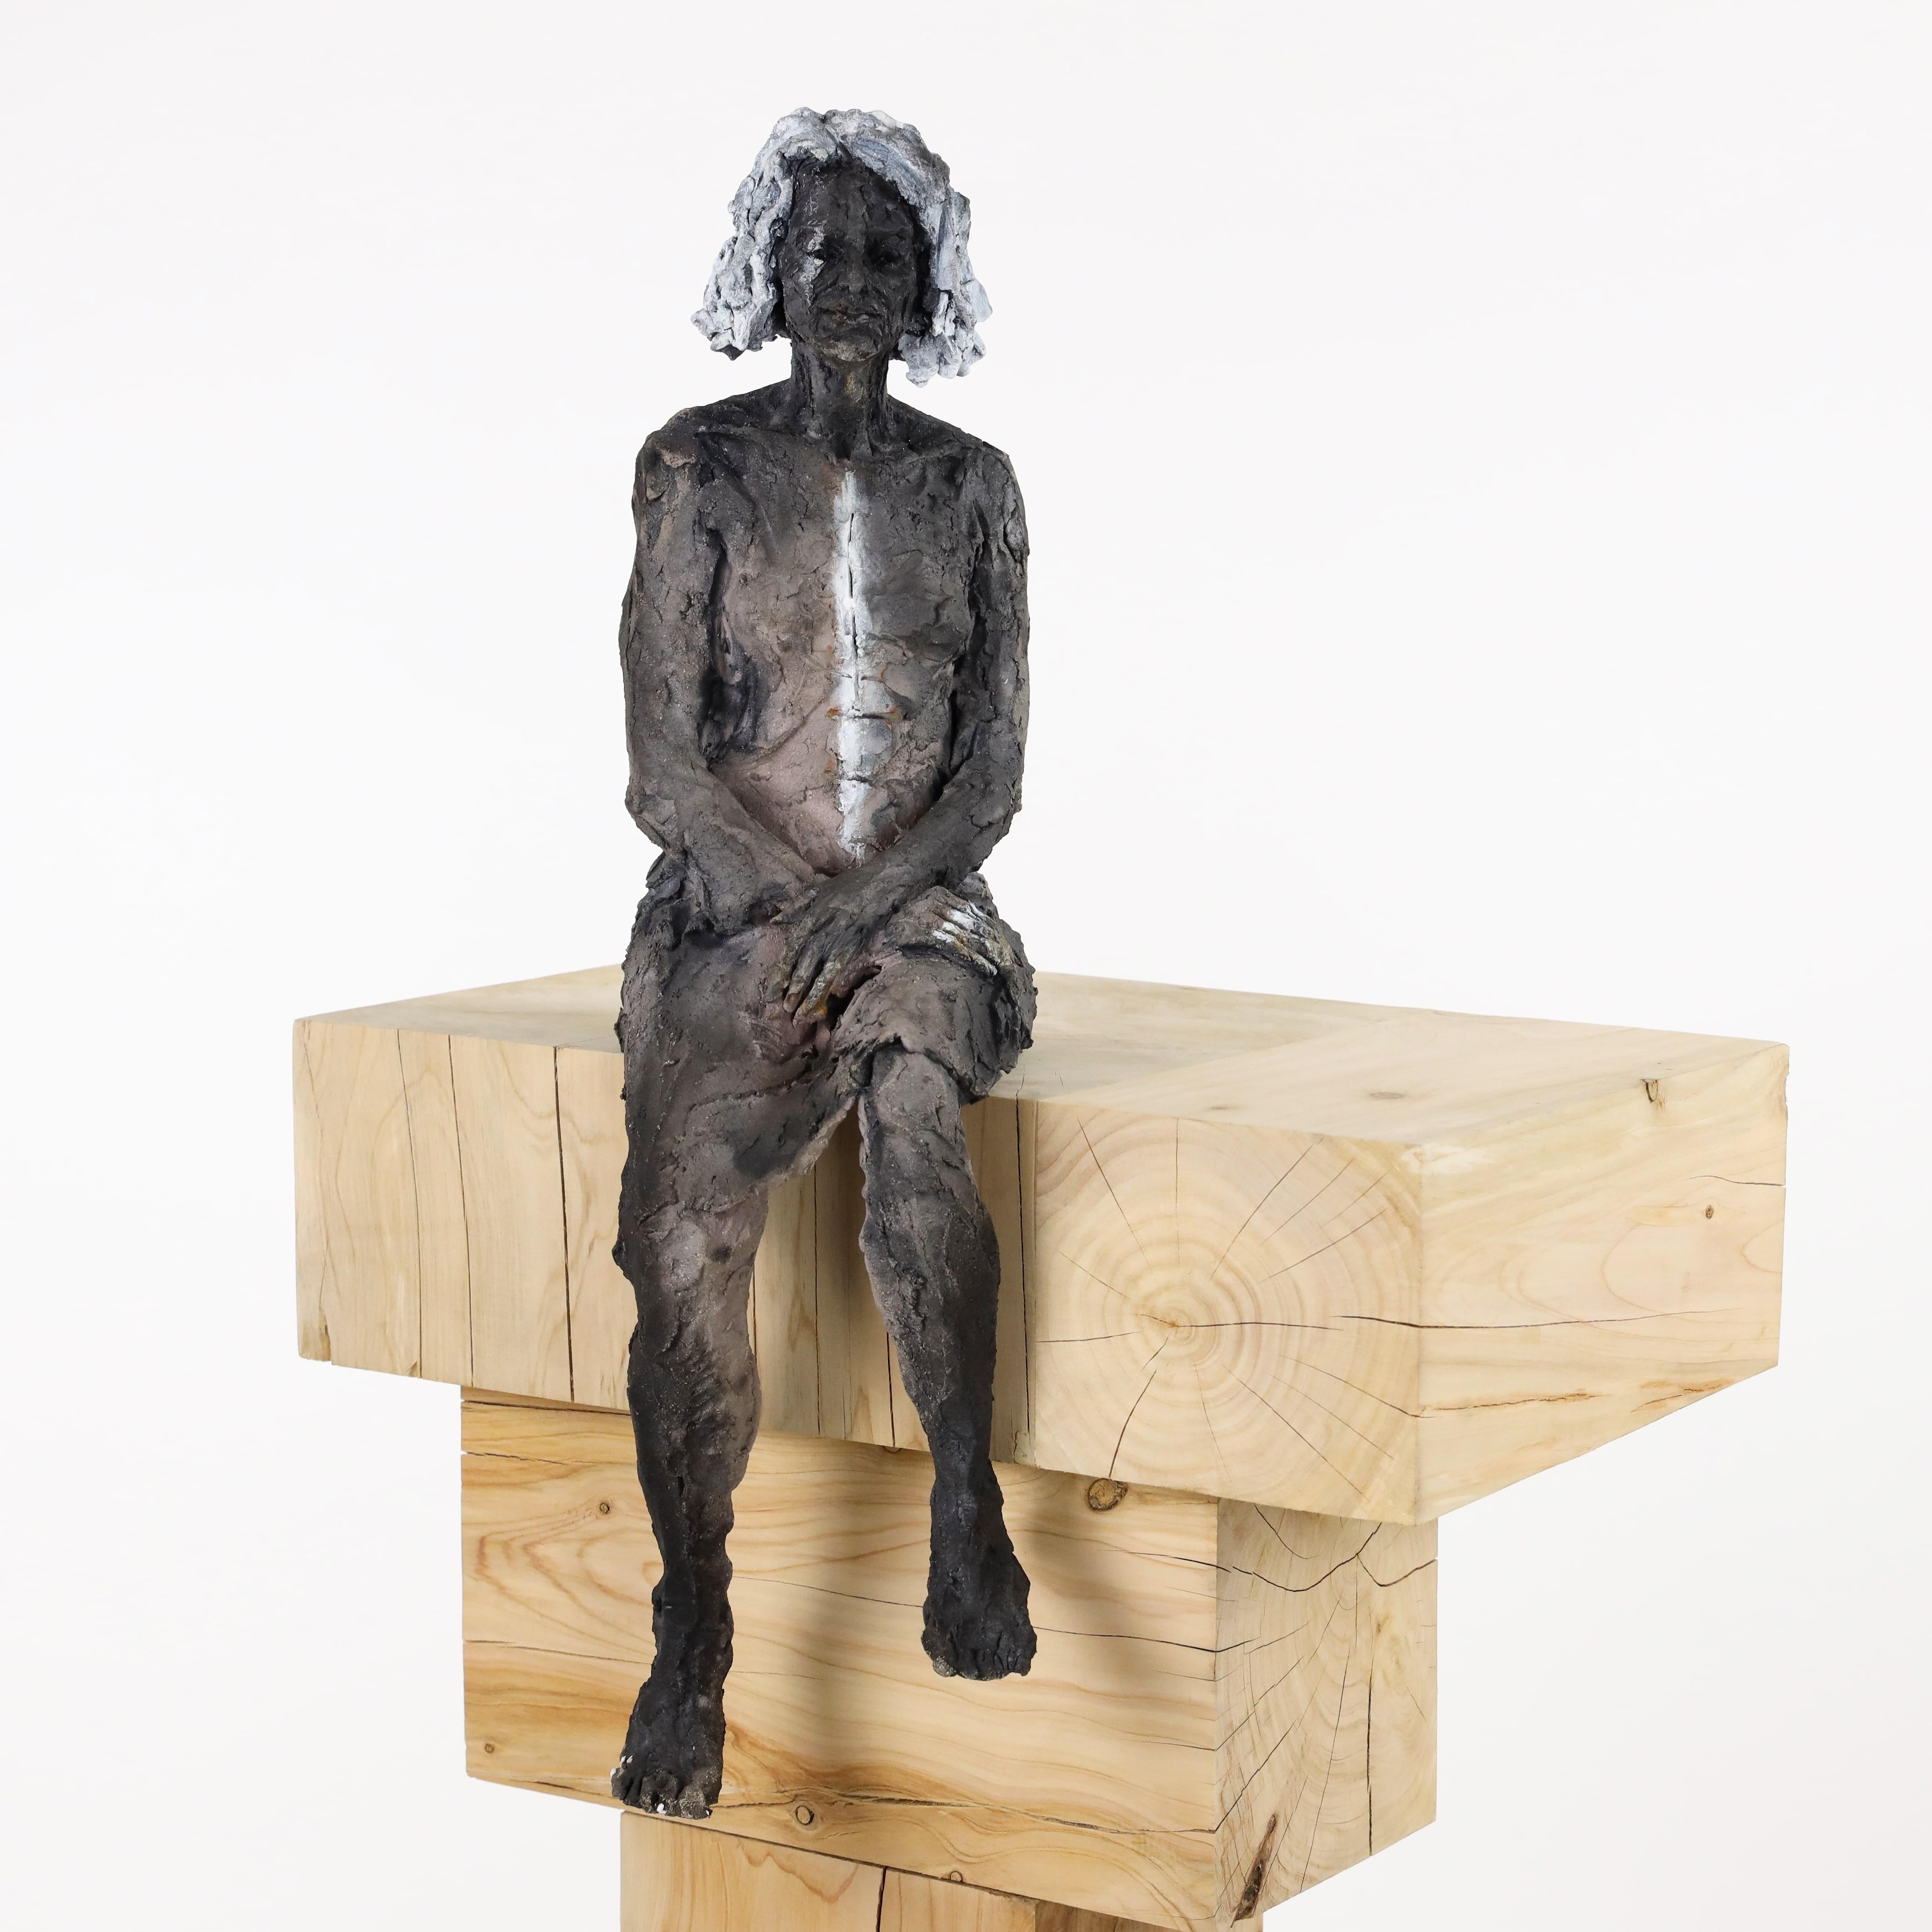 Die Akte – weibliches Porträt, Keramikskulptur – Sculpture von Cécile Raynal